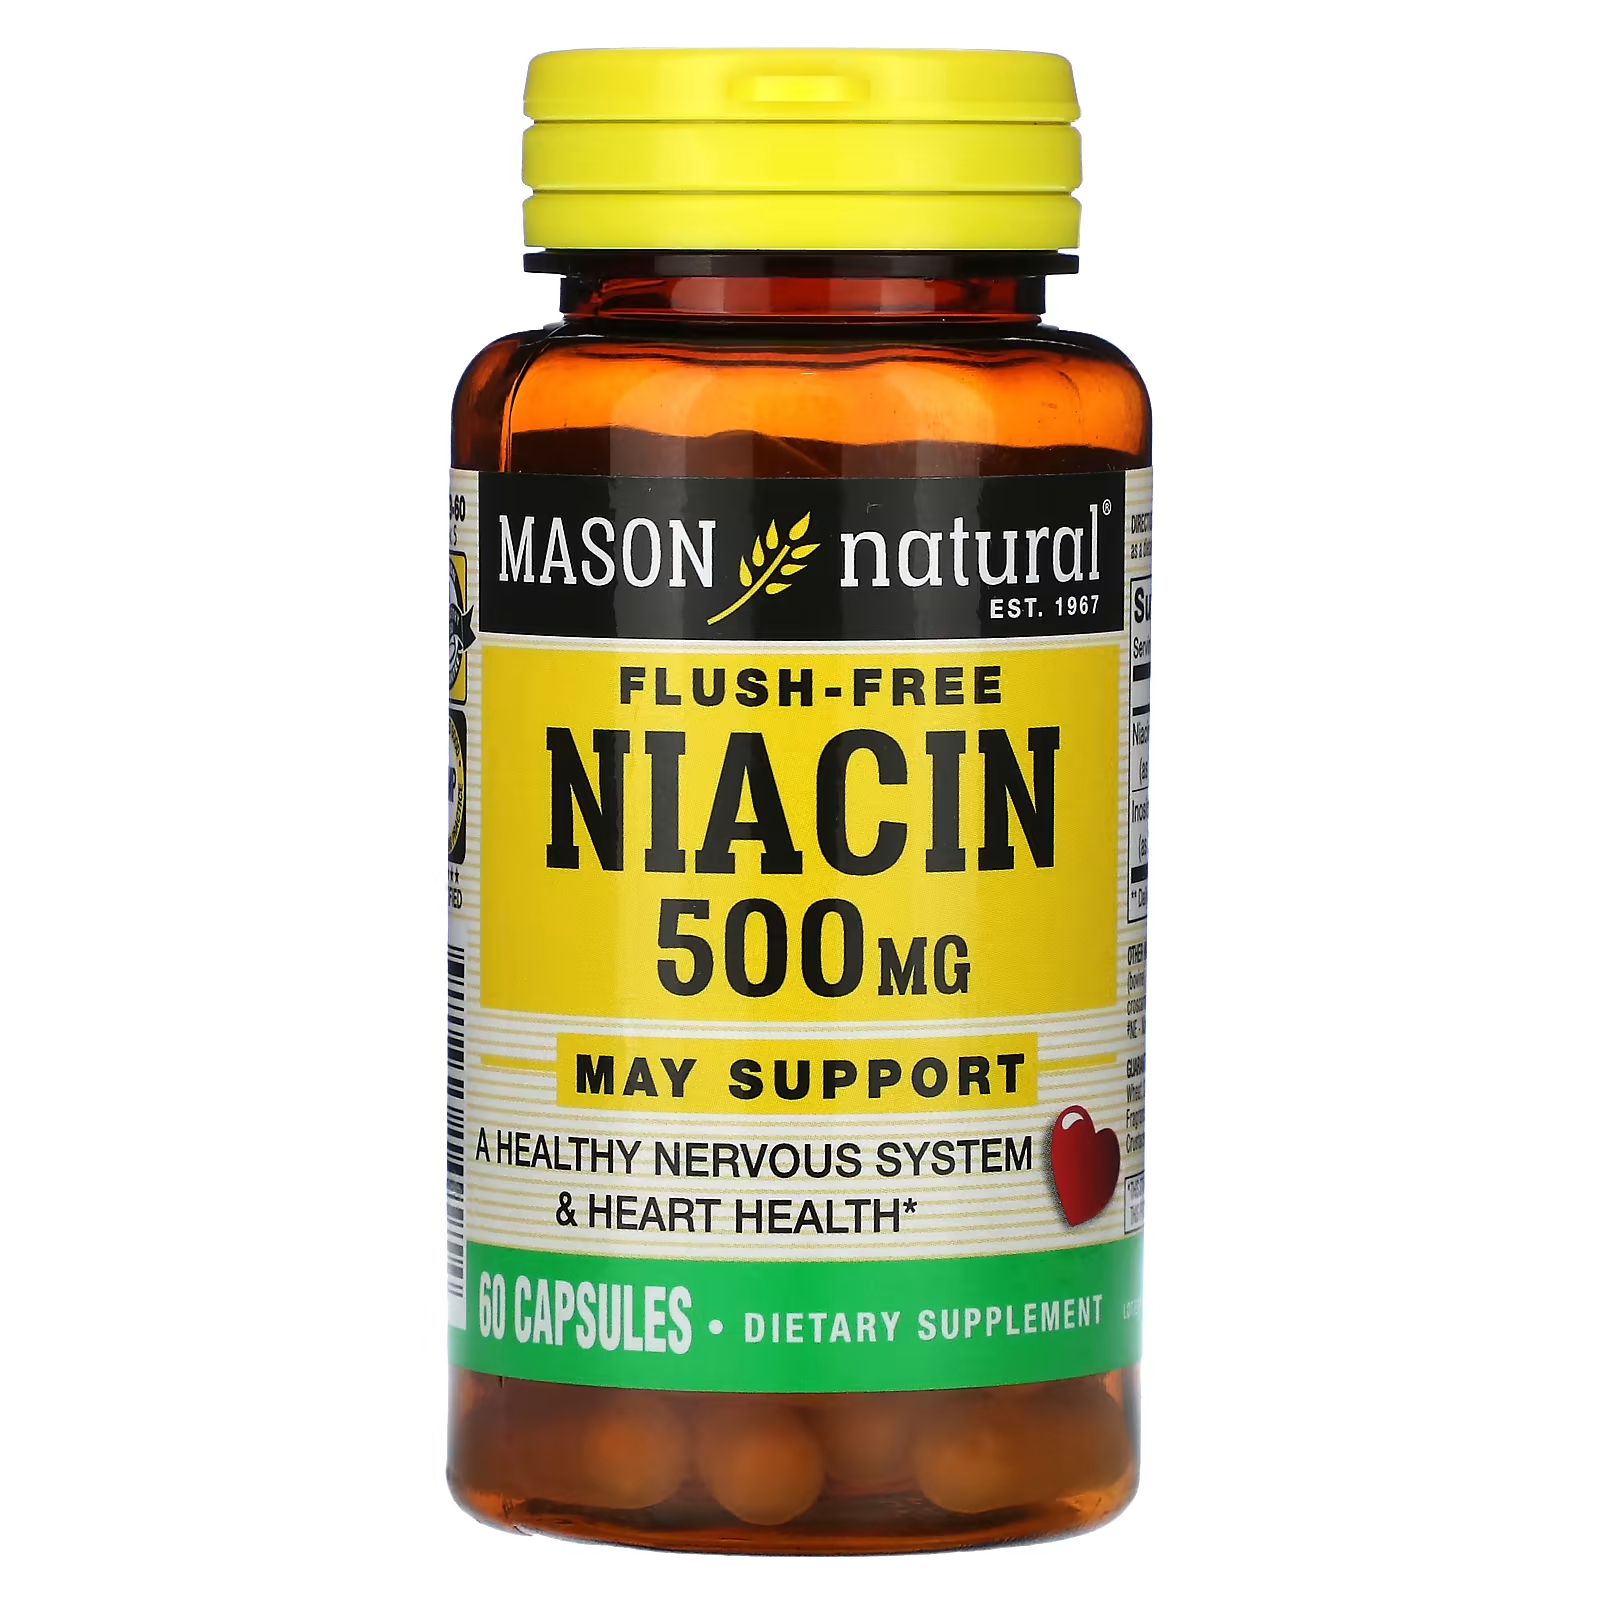 Биологически активная добавка Mason Natural ниацин, 500 мг., 60 капсул федунина н ю здоровье нервной системы